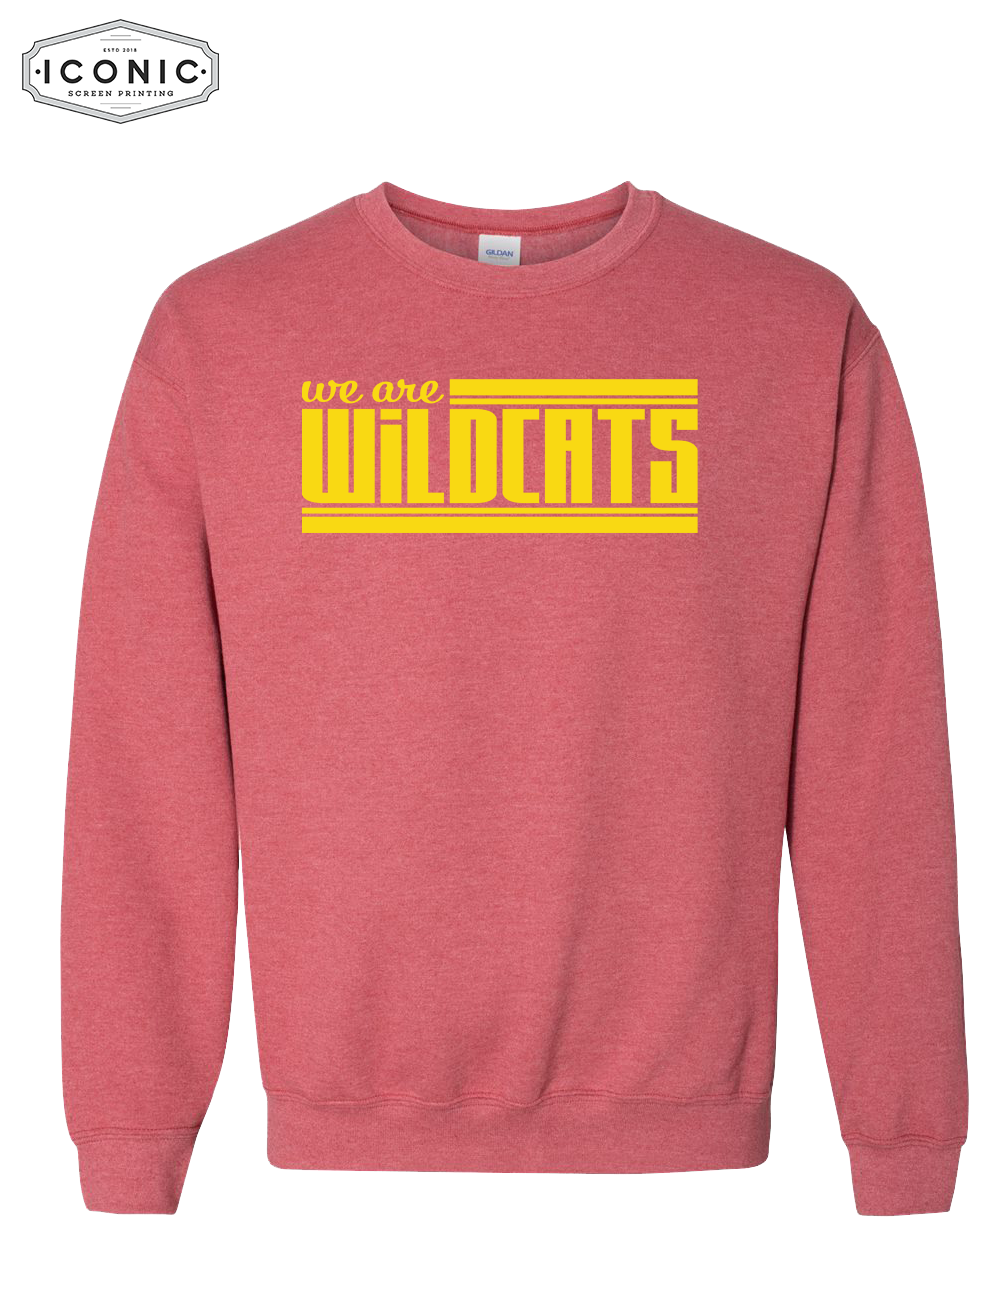 We Are Wildcats - Heavy Blend Sweatshirt